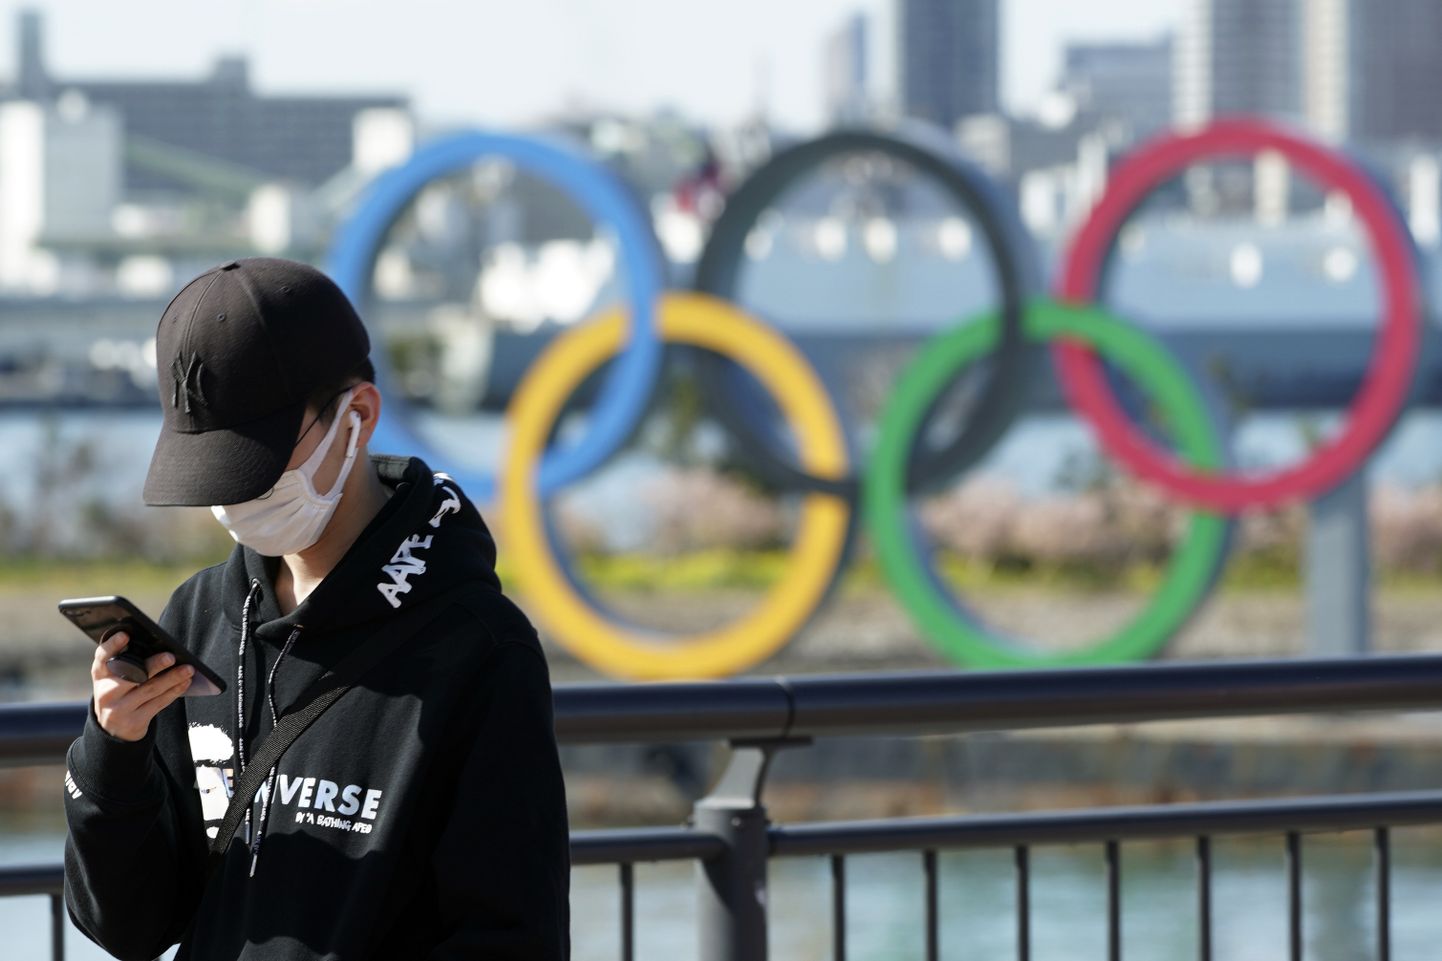 Koroonaviirus võib põhjustada Tokyo olümpiamängude edasi lükkamise või koguni ärajäämise. Pilt on illustratiivne.